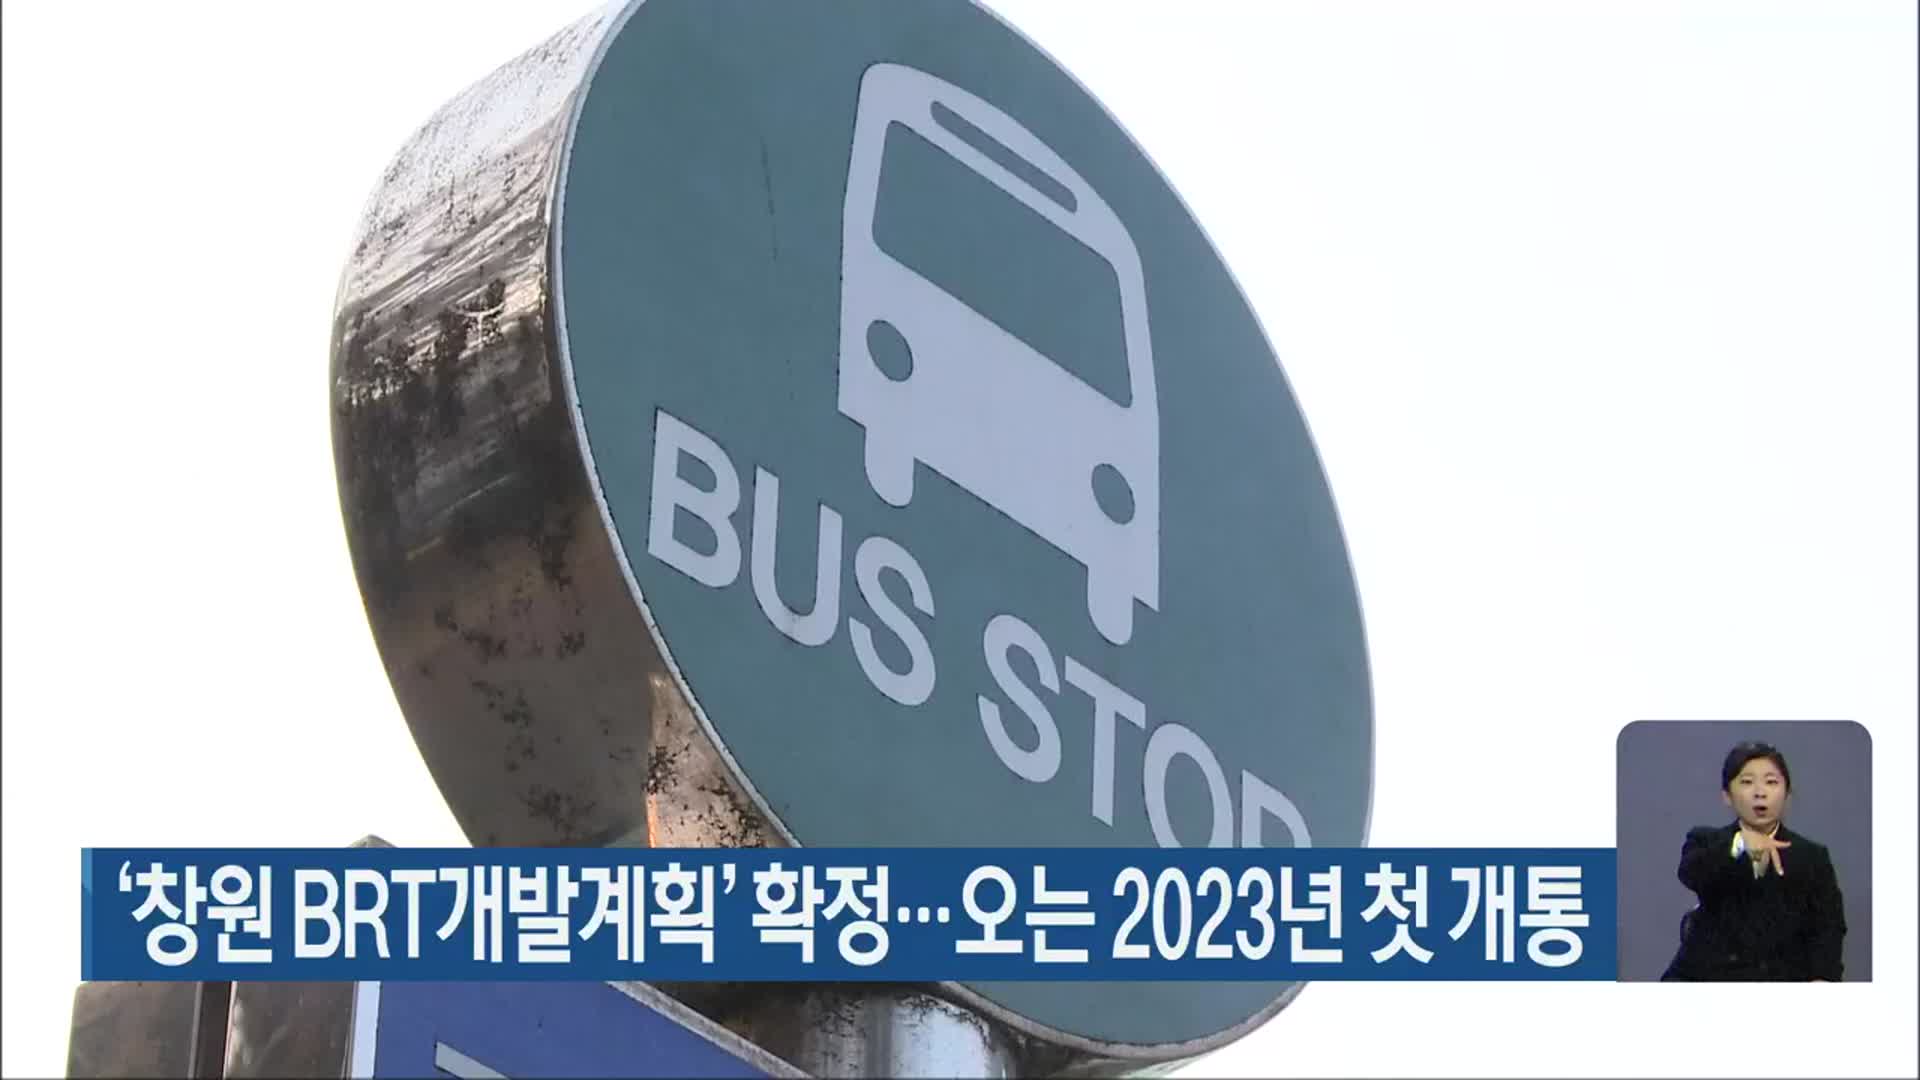 ‘창원 BRT개발계획’ 확정…오는 2023년 첫 개통